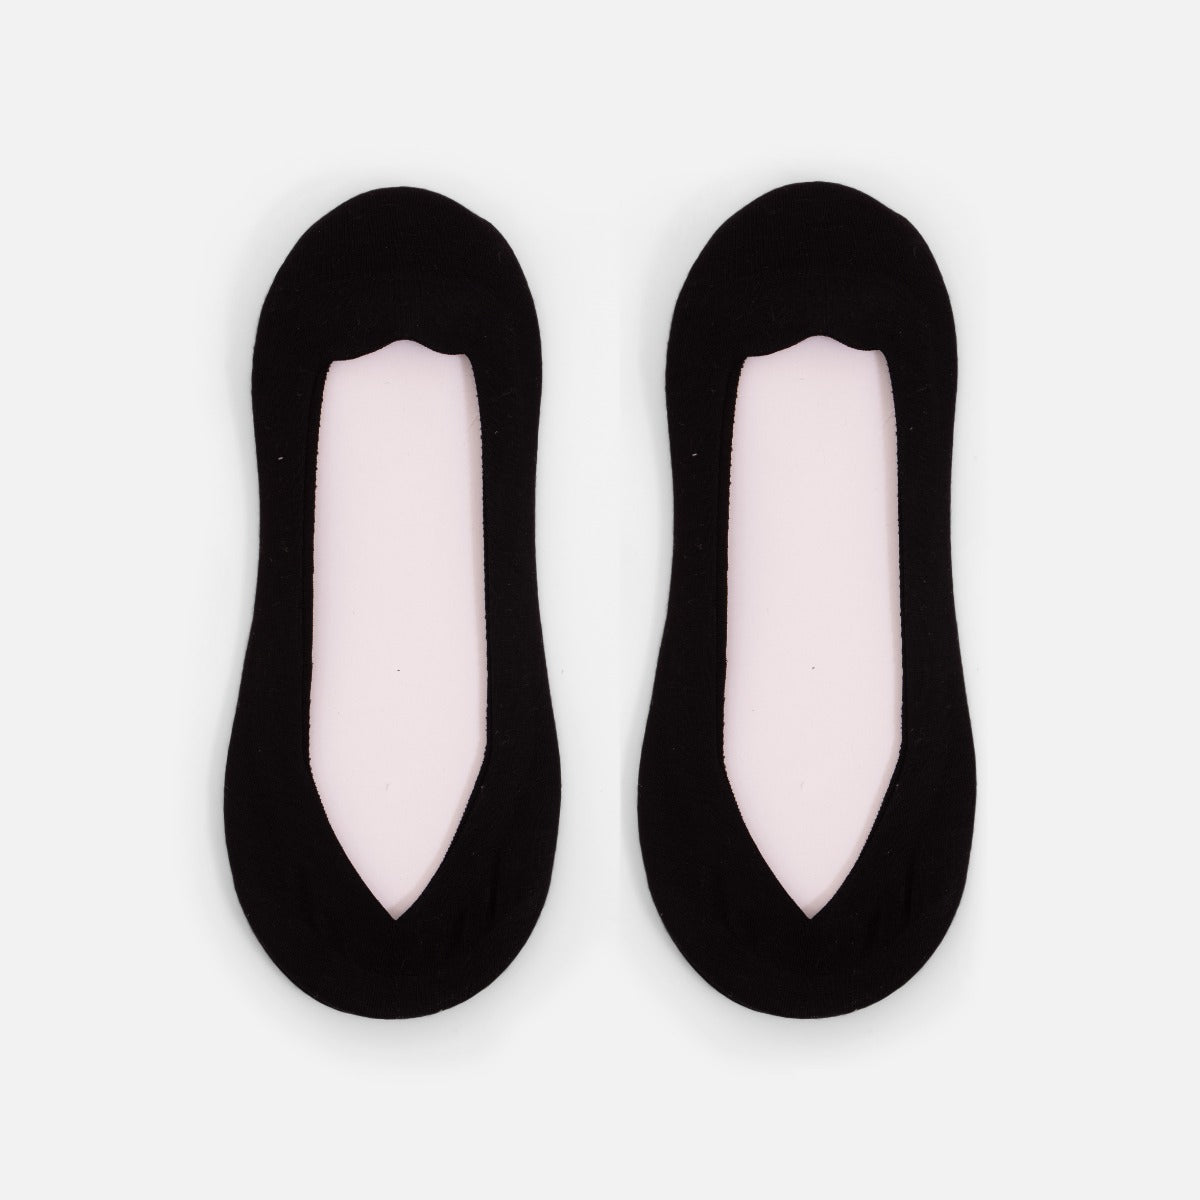 Indented black footlets